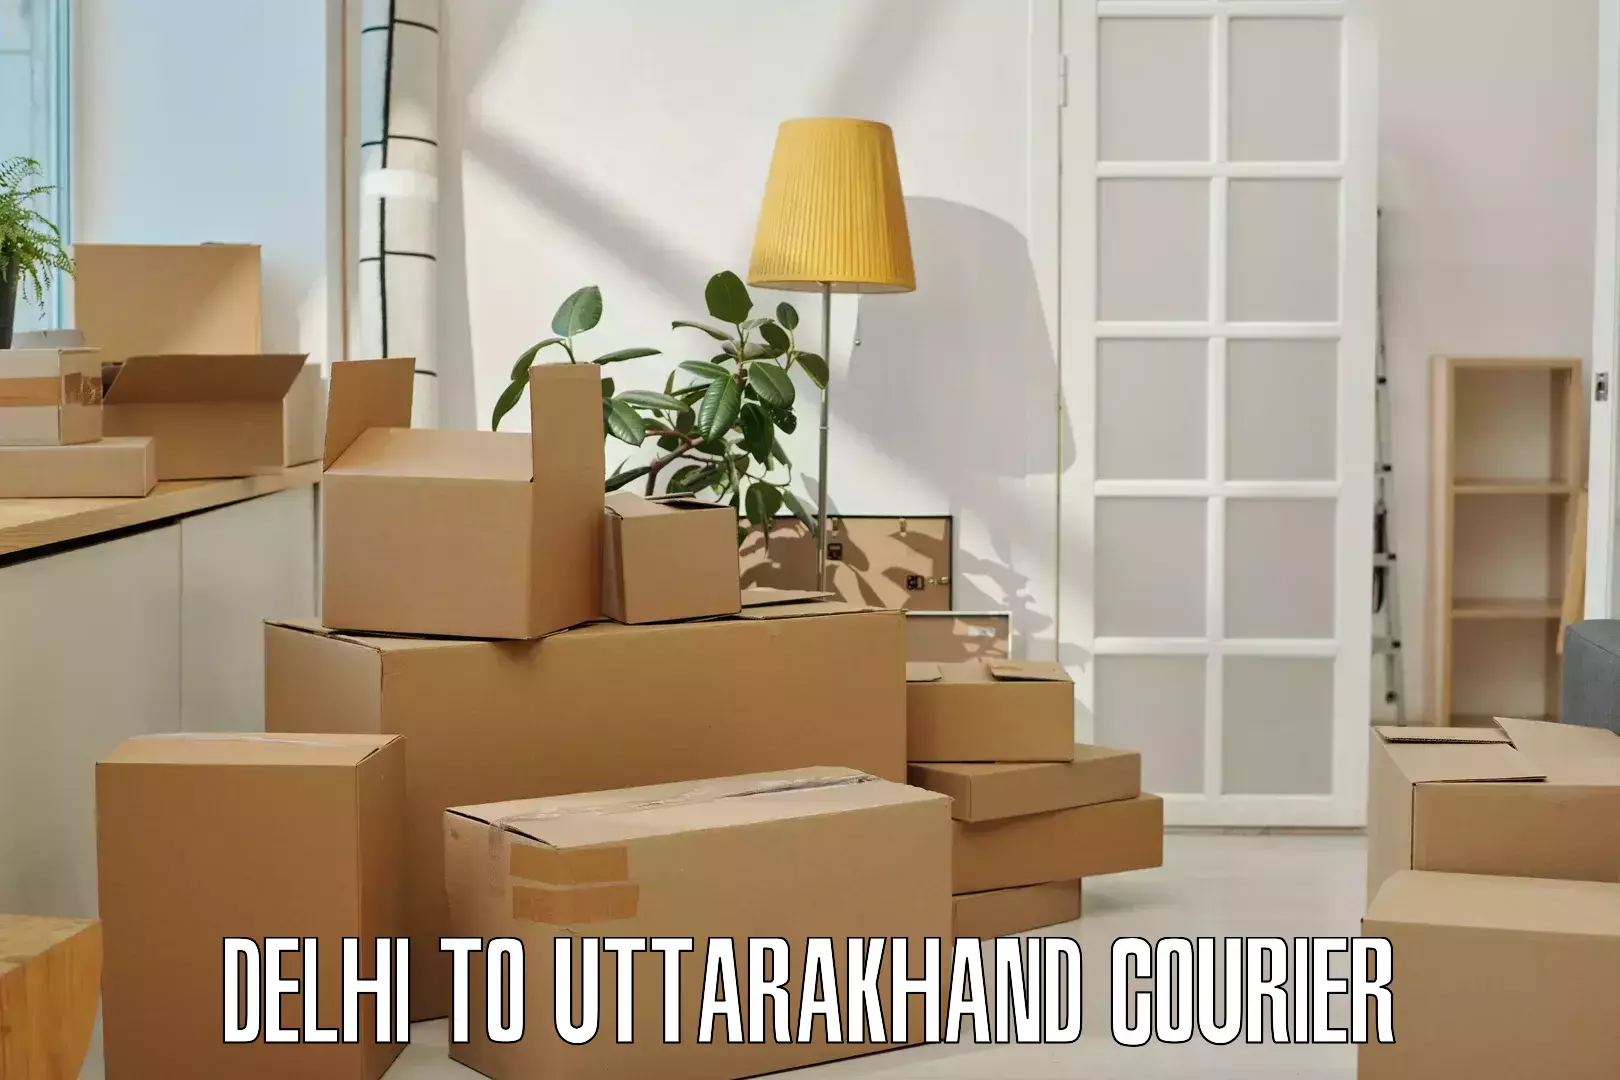 Cash on delivery service Delhi to Tehri